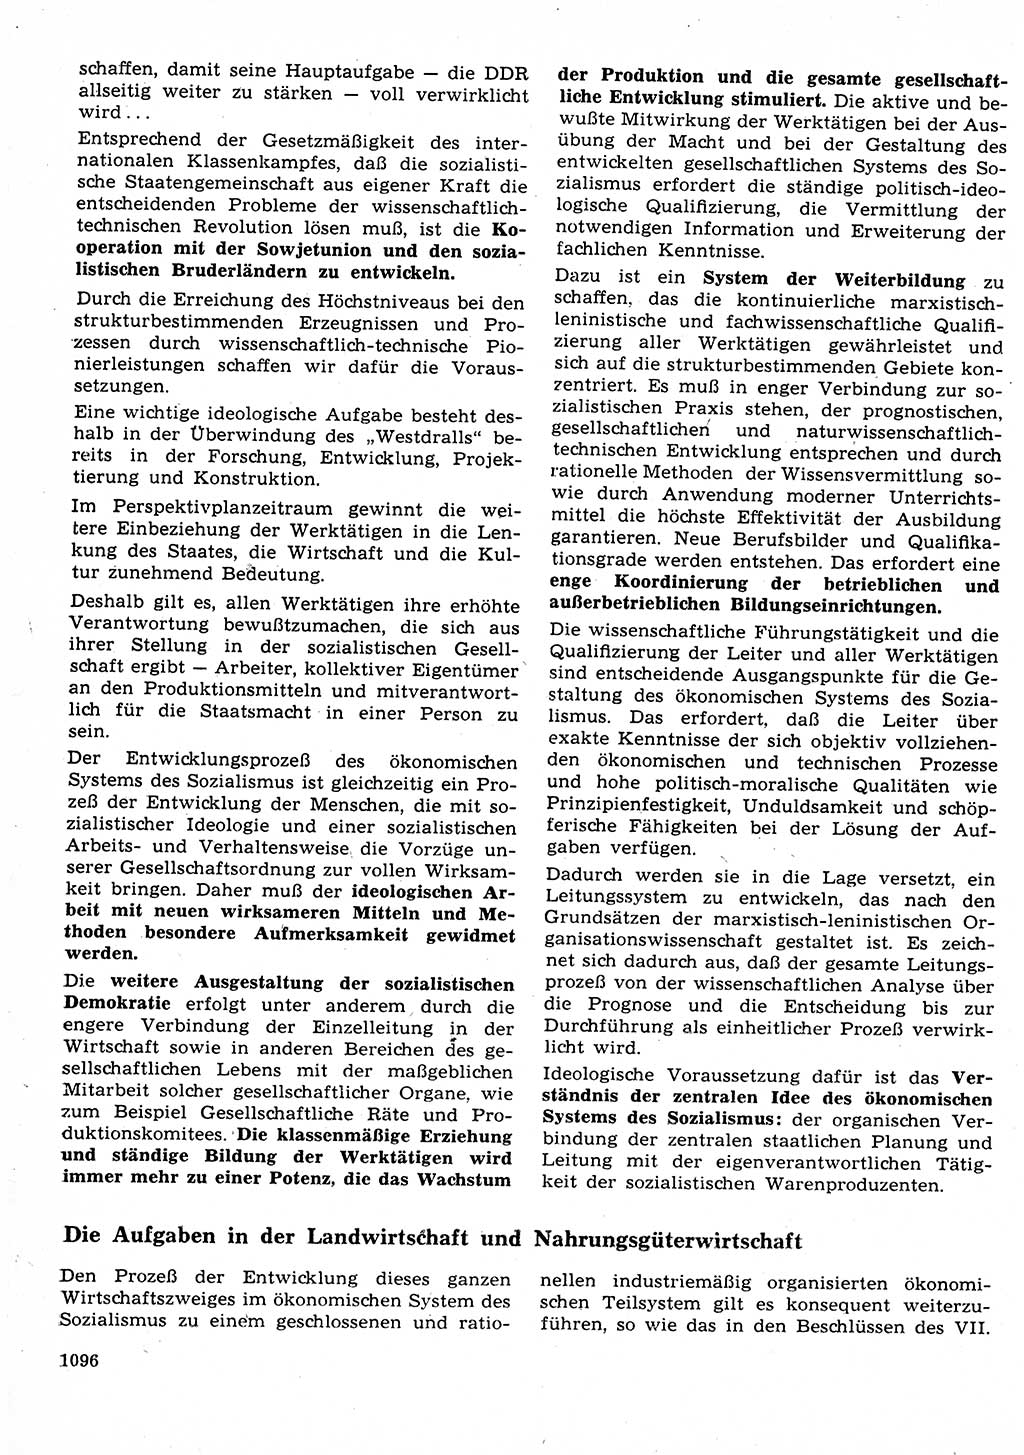 Neuer Weg (NW), Organ des Zentralkomitees (ZK) der SED (Sozialistische Einheitspartei Deutschlands) für Fragen des Parteilebens, 23. Jahrgang [Deutsche Demokratische Republik (DDR)] 1968, Seite 1080 (NW ZK SED DDR 1968, S. 1080)